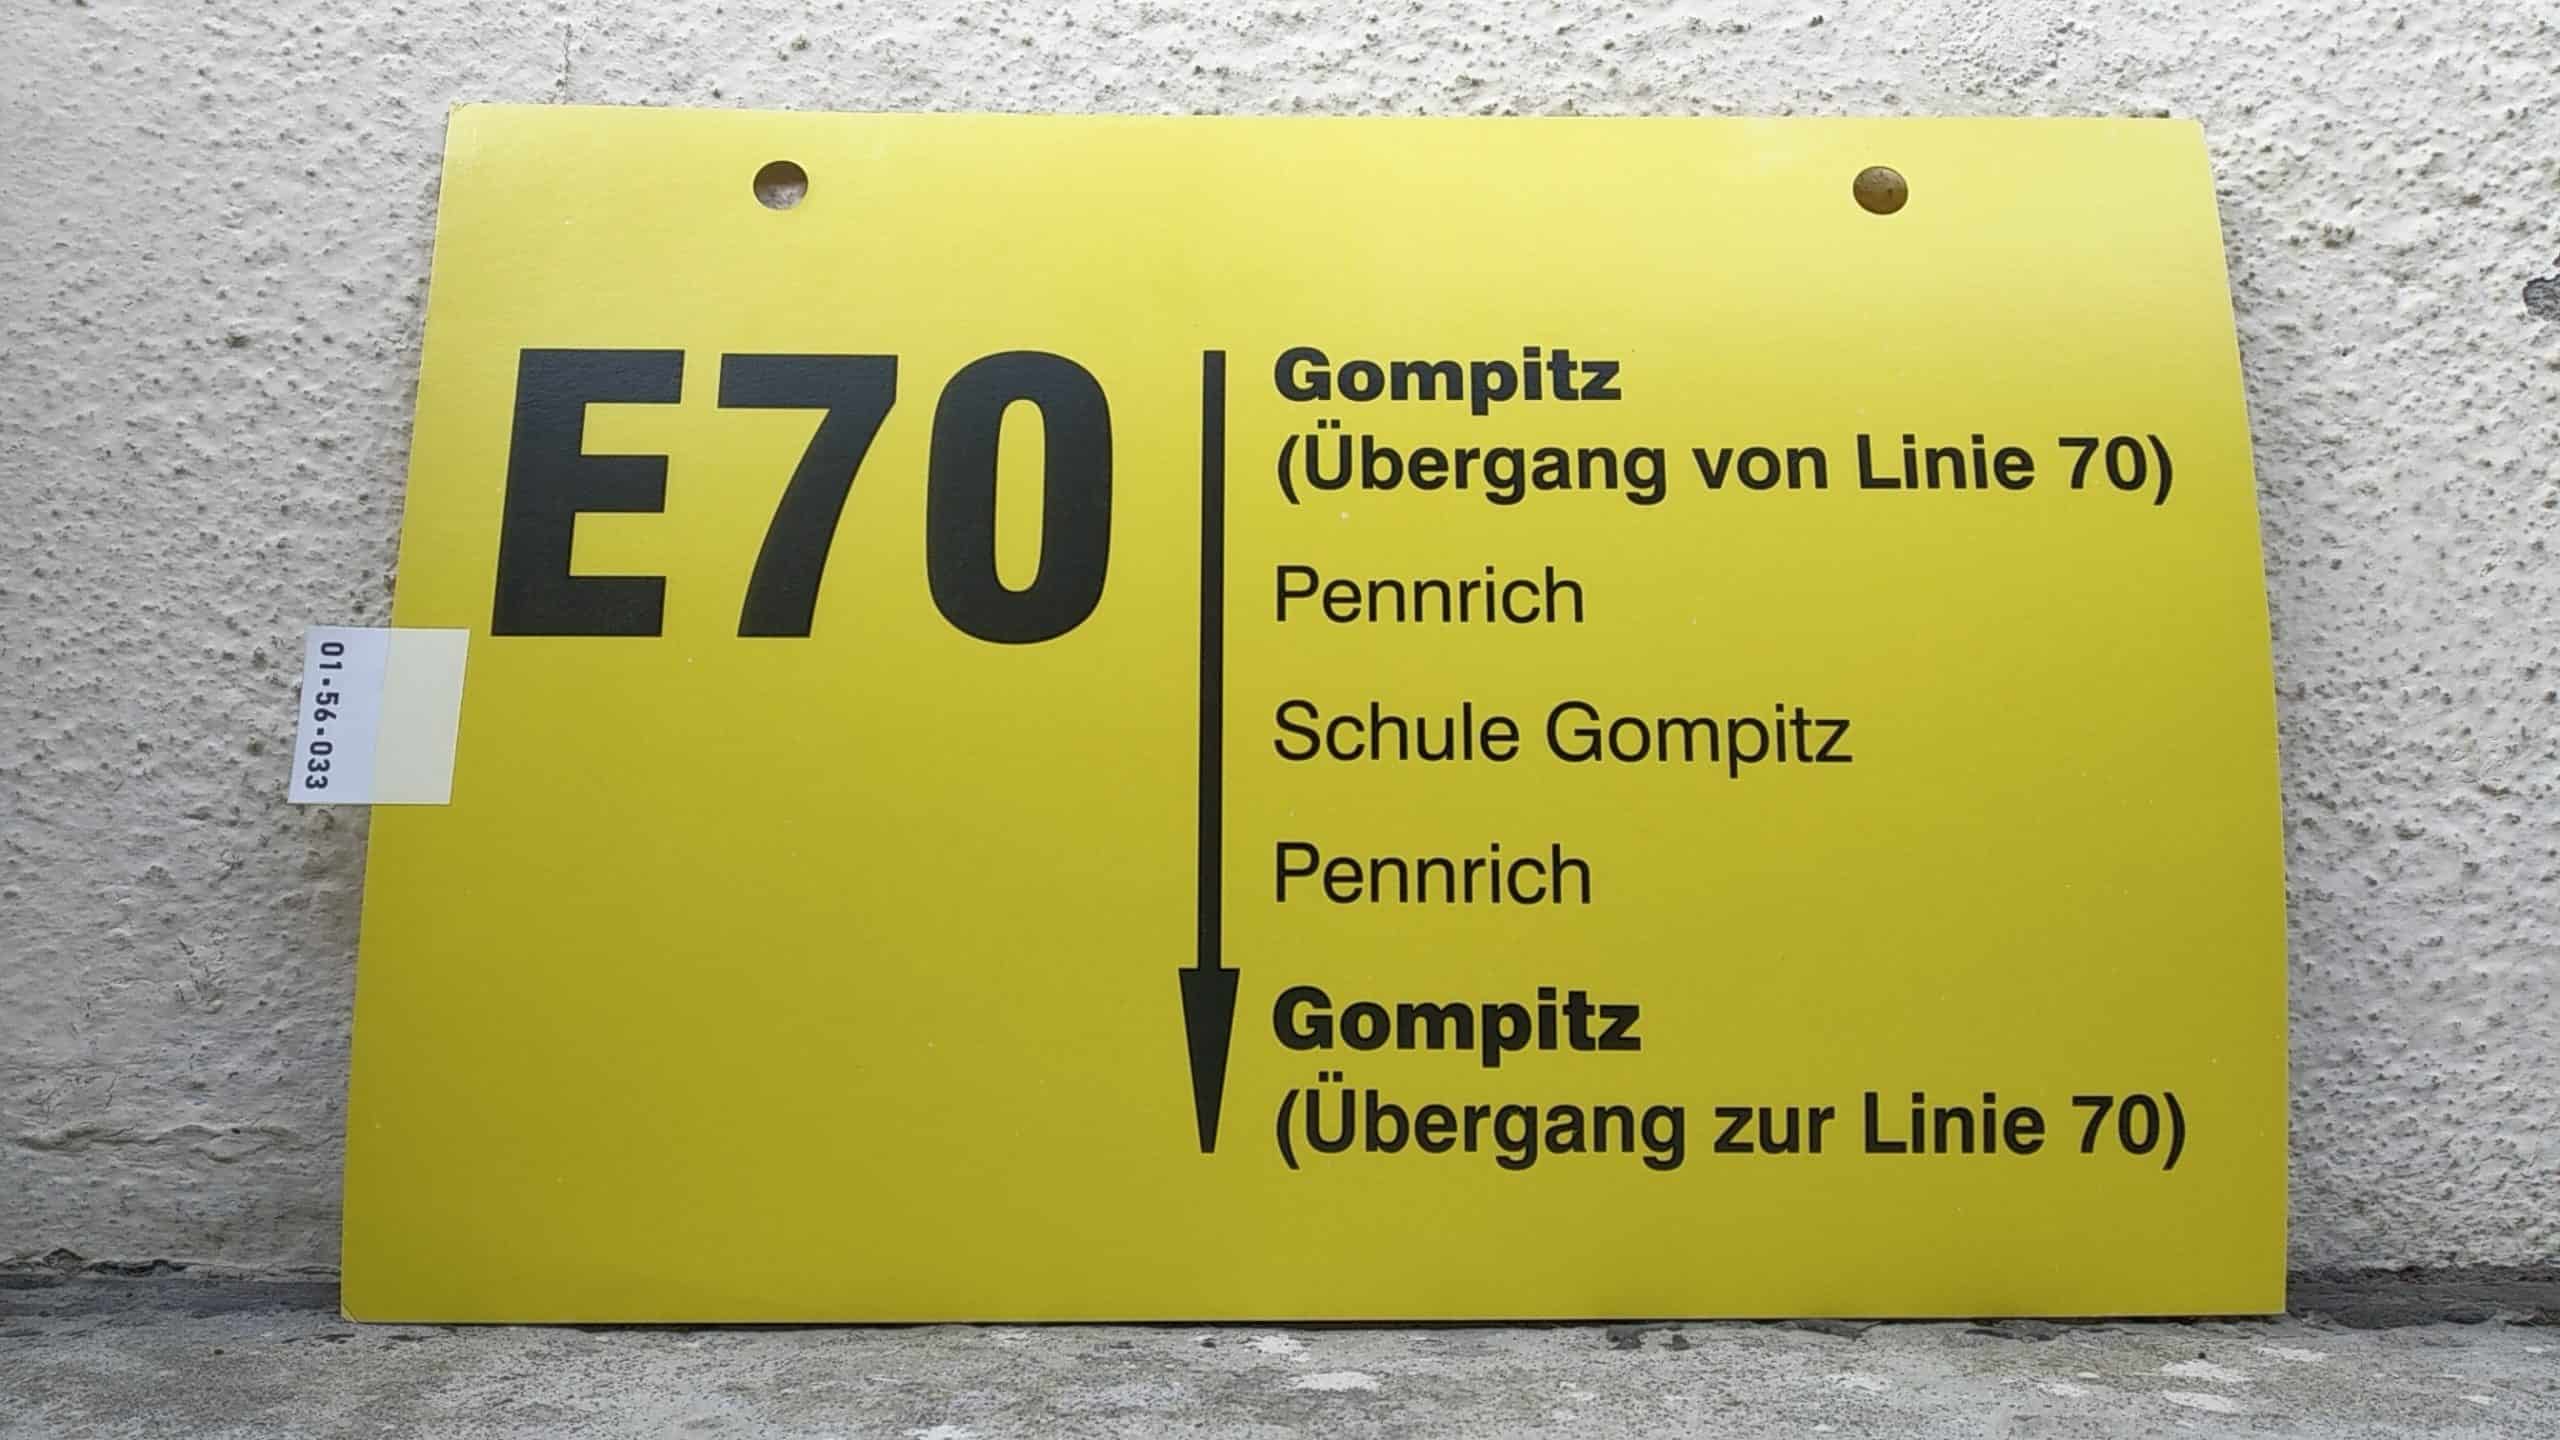 Ein seltenes Bus-Linienschild aus Dresden der Linie E70 von Gompitz (Übergang von Linie 70) nach Gompitz (Übergang zur Linie 70)